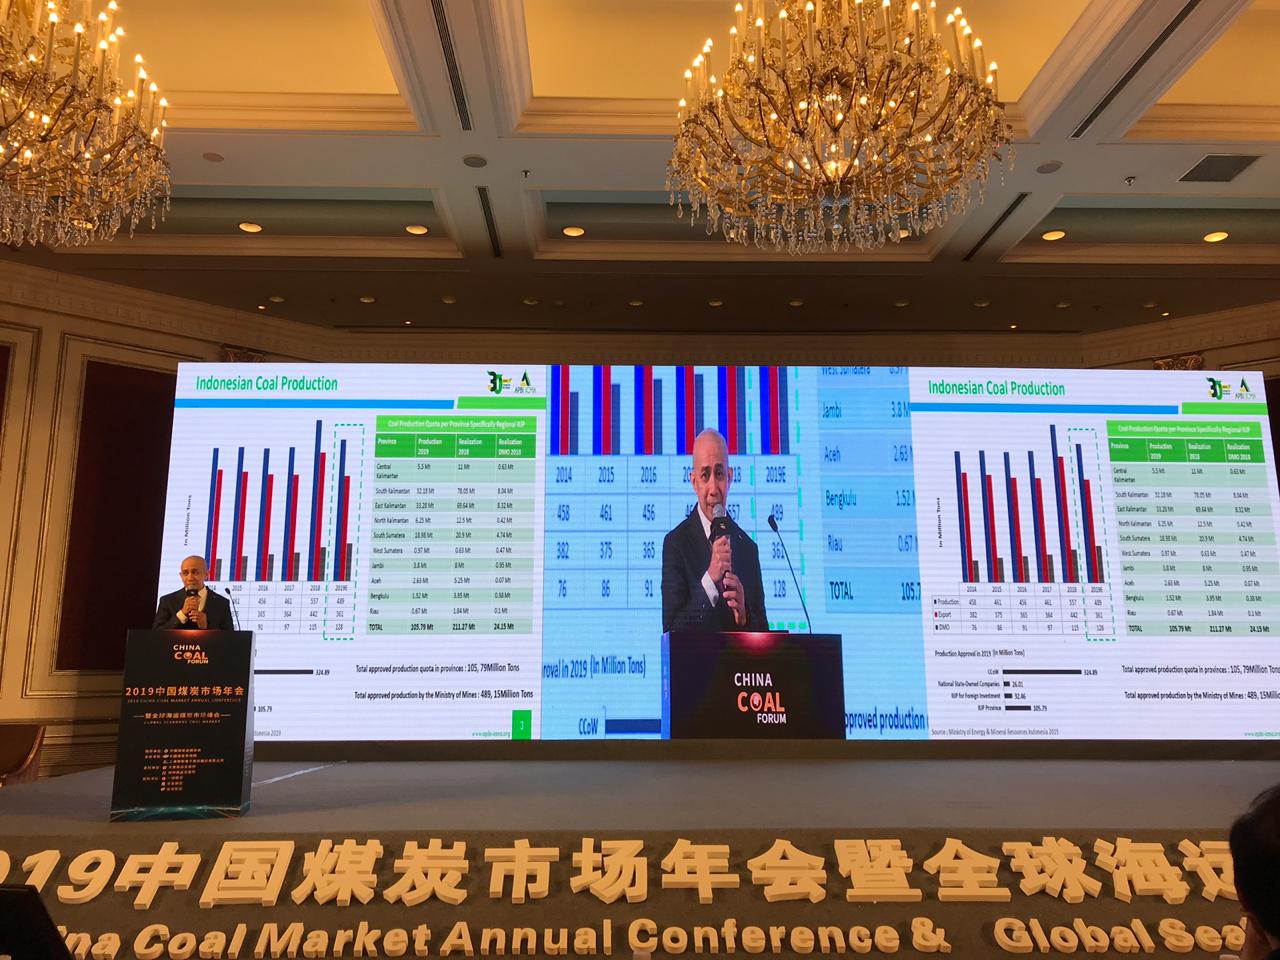 2019 Global Seaborne Coal Summit & China Annual Coal Market tanggal 11 April 2019